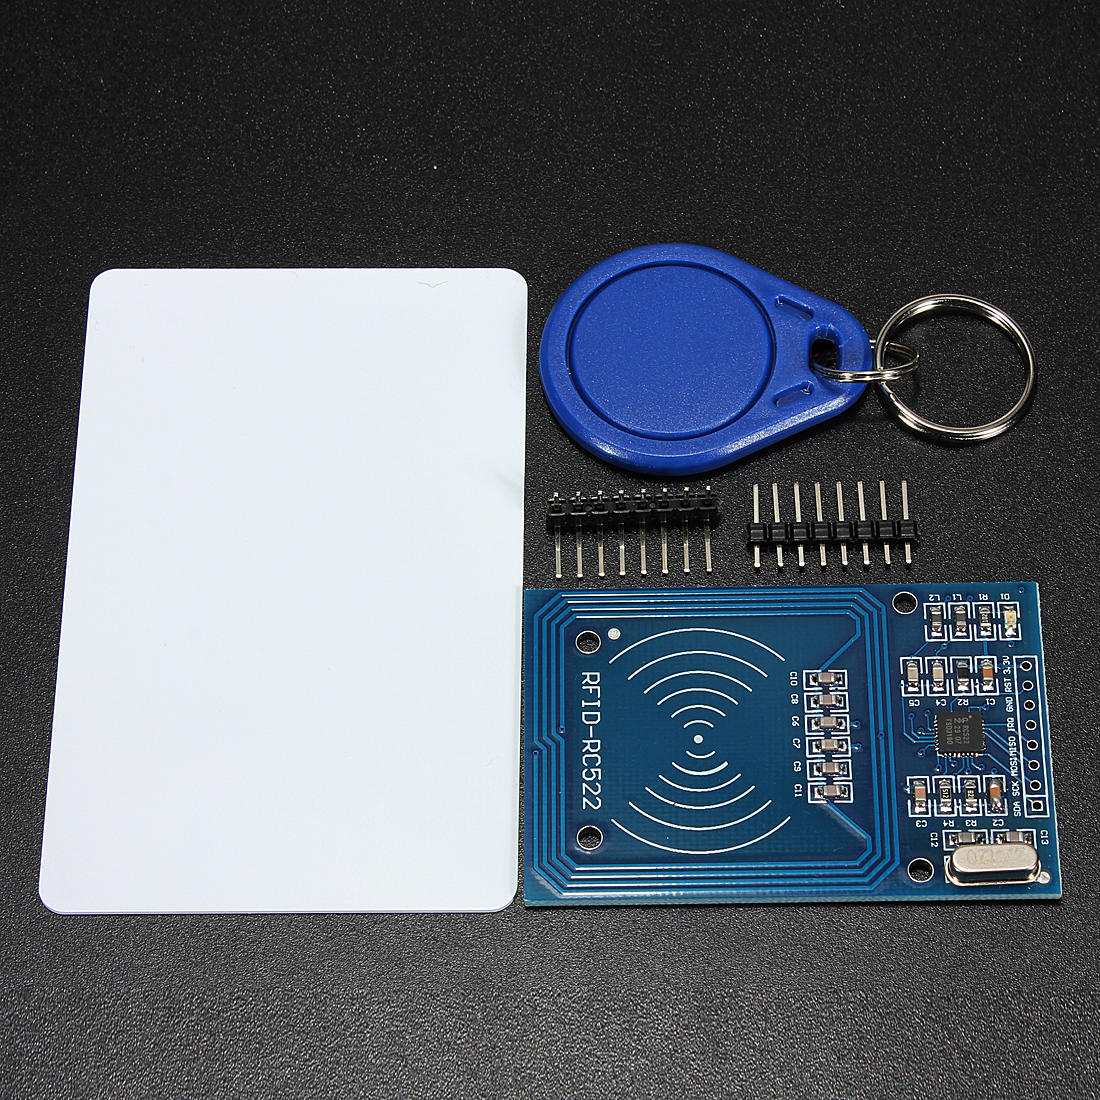 

10шт 3.3V RC522 Чип IC Индукционная карта RFID считыватель 13,56 МГц 10 Мбит / с Geekcreit для Arduino - продукты, котор